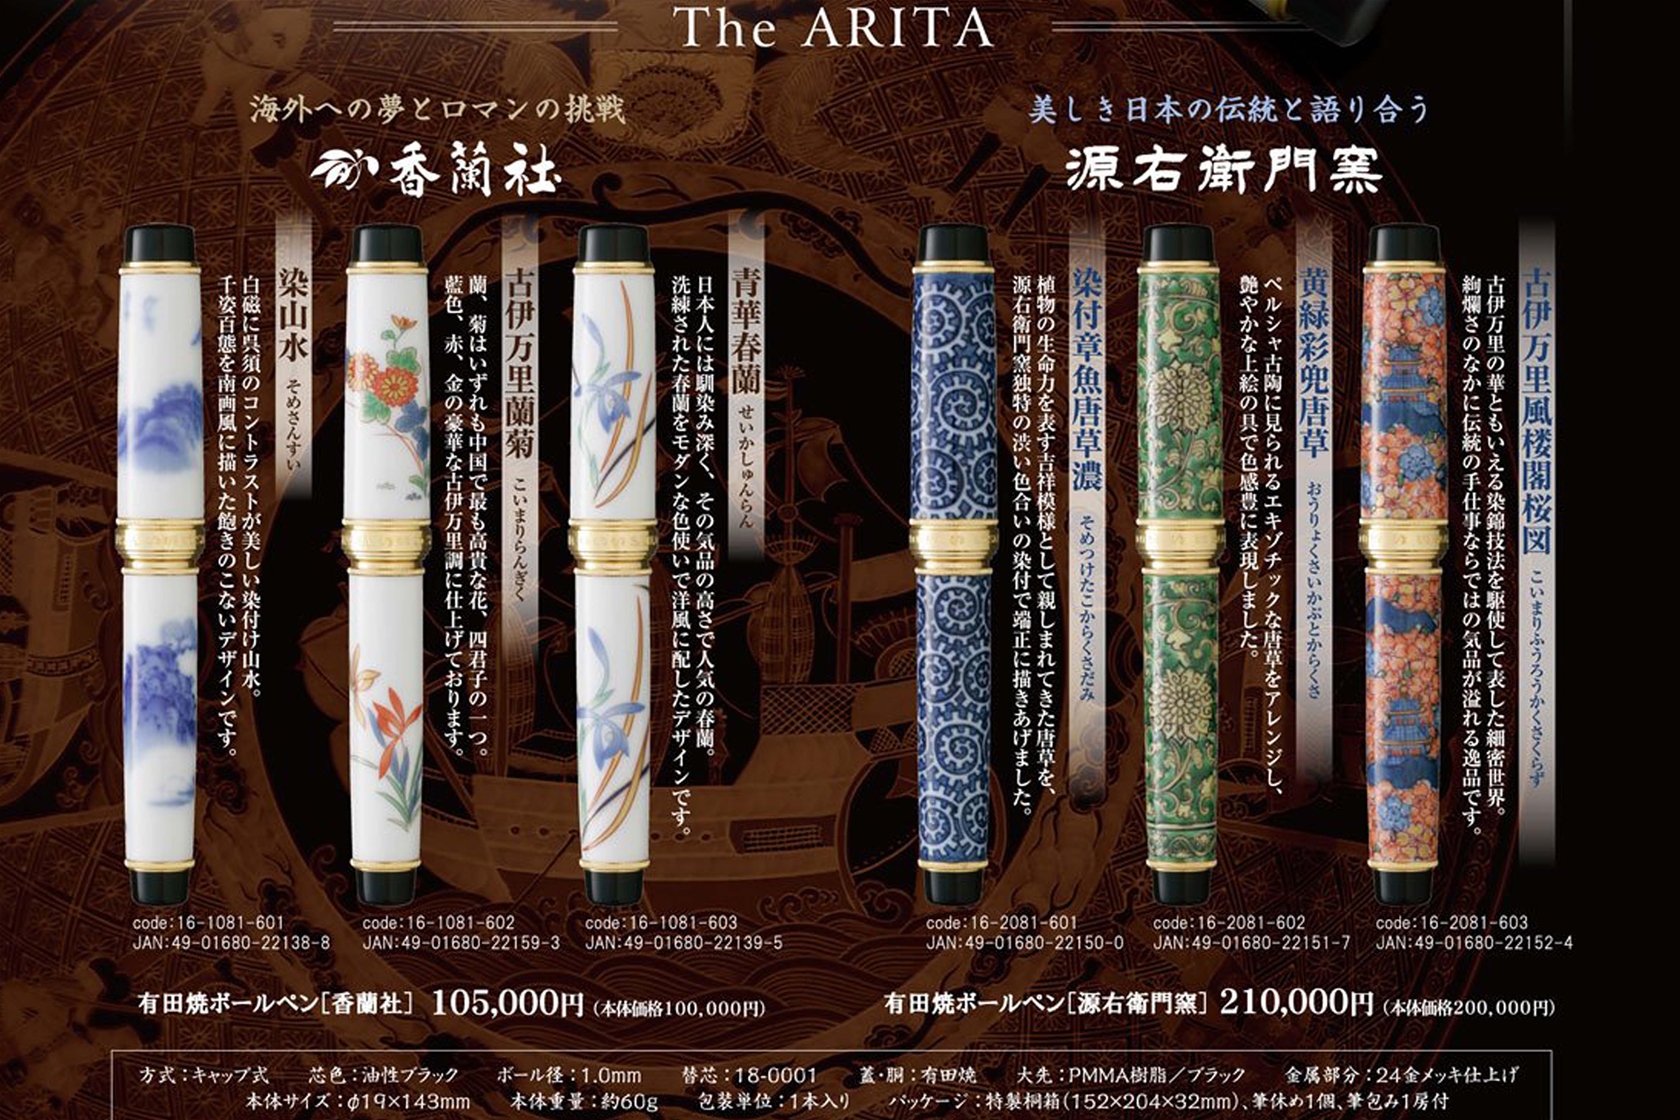 Nghệ thuật gốm sứ Arita cùng những chiếc bút Sailor Arita Porcelain Gen Emon